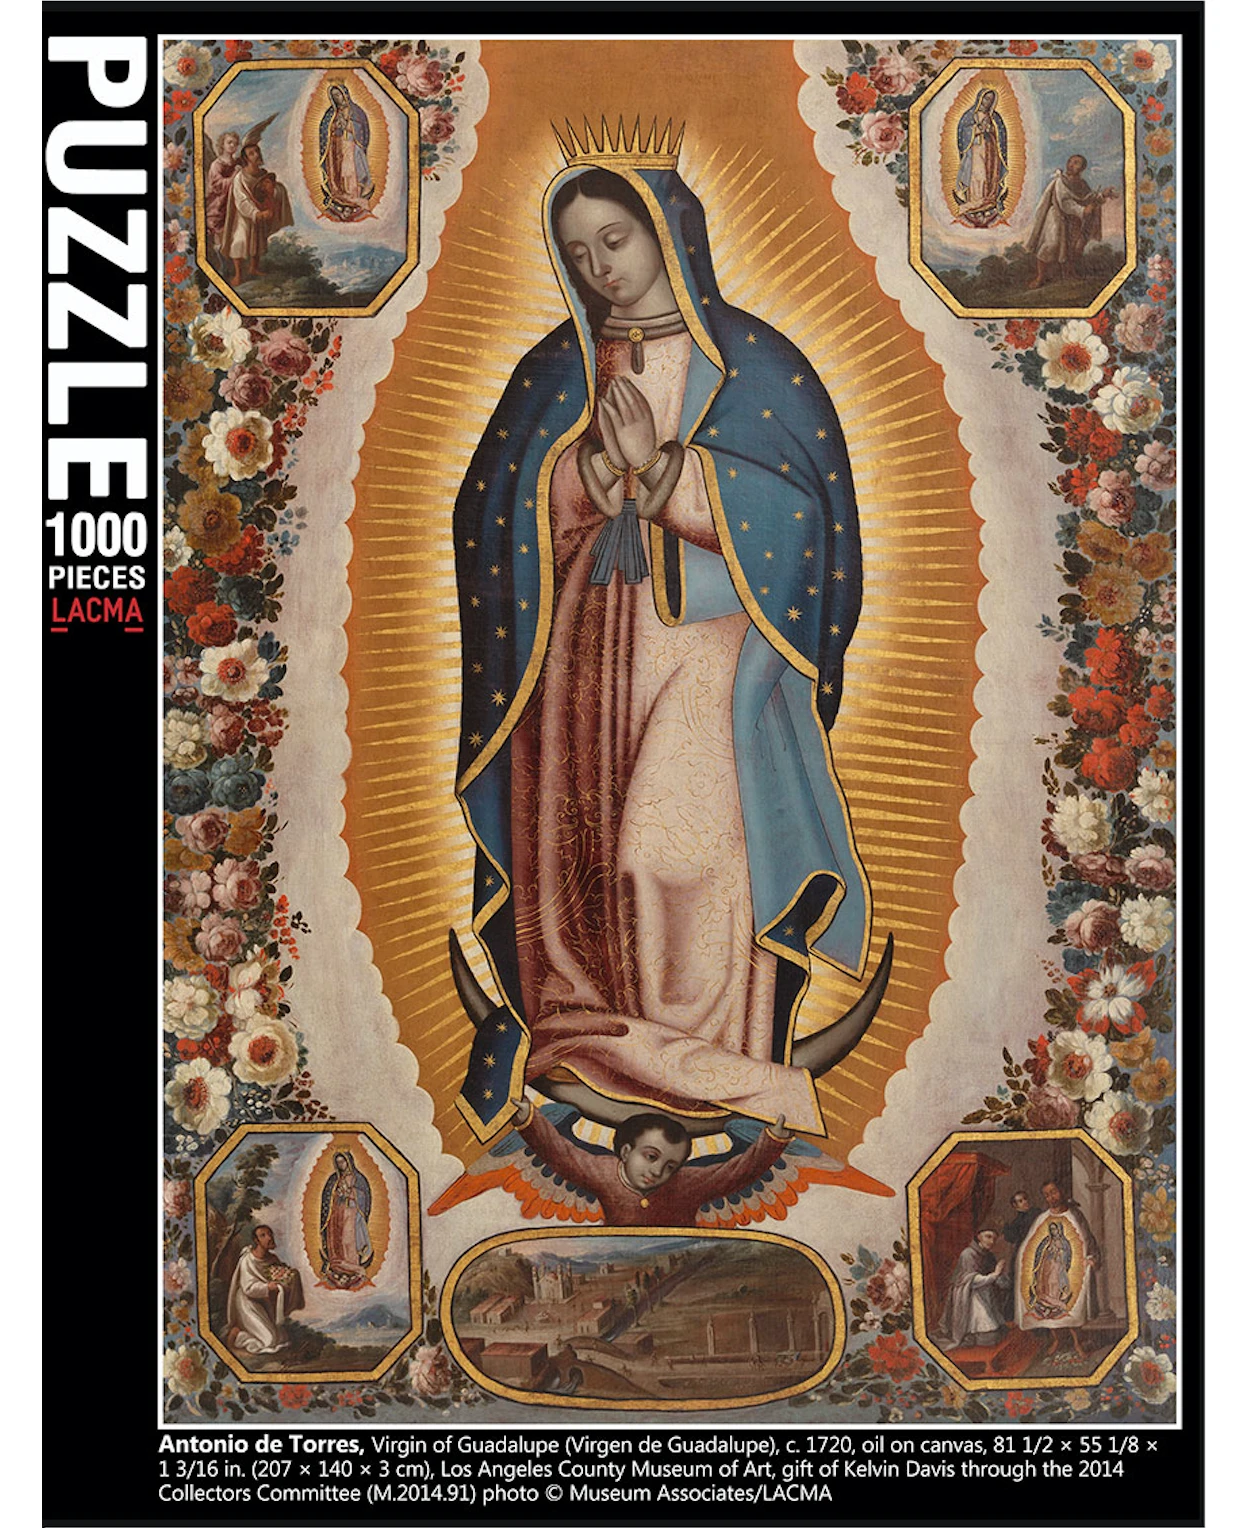 Antonio de Torres Virgin of Guadalupe Puzzle, photo © Museum Associates/LACMA